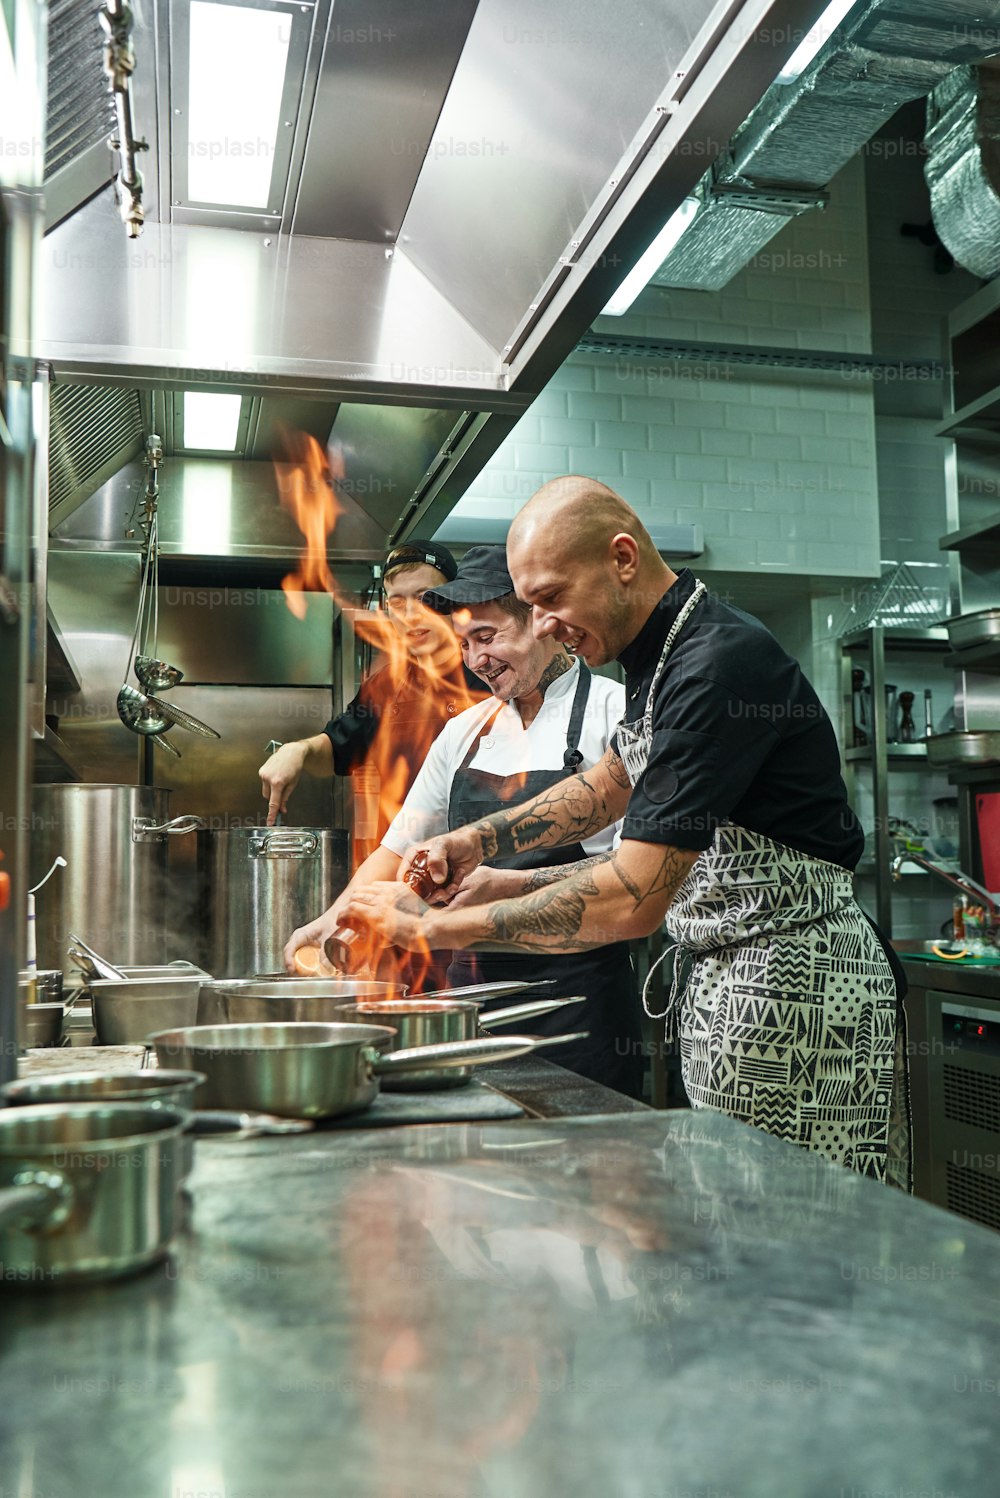 Muito quente Alegre chef e dois seus assistentes preparando o prato no fogão com uma fogueira aberta na cozinha do restaurante. Flambe. Conceito de culinária